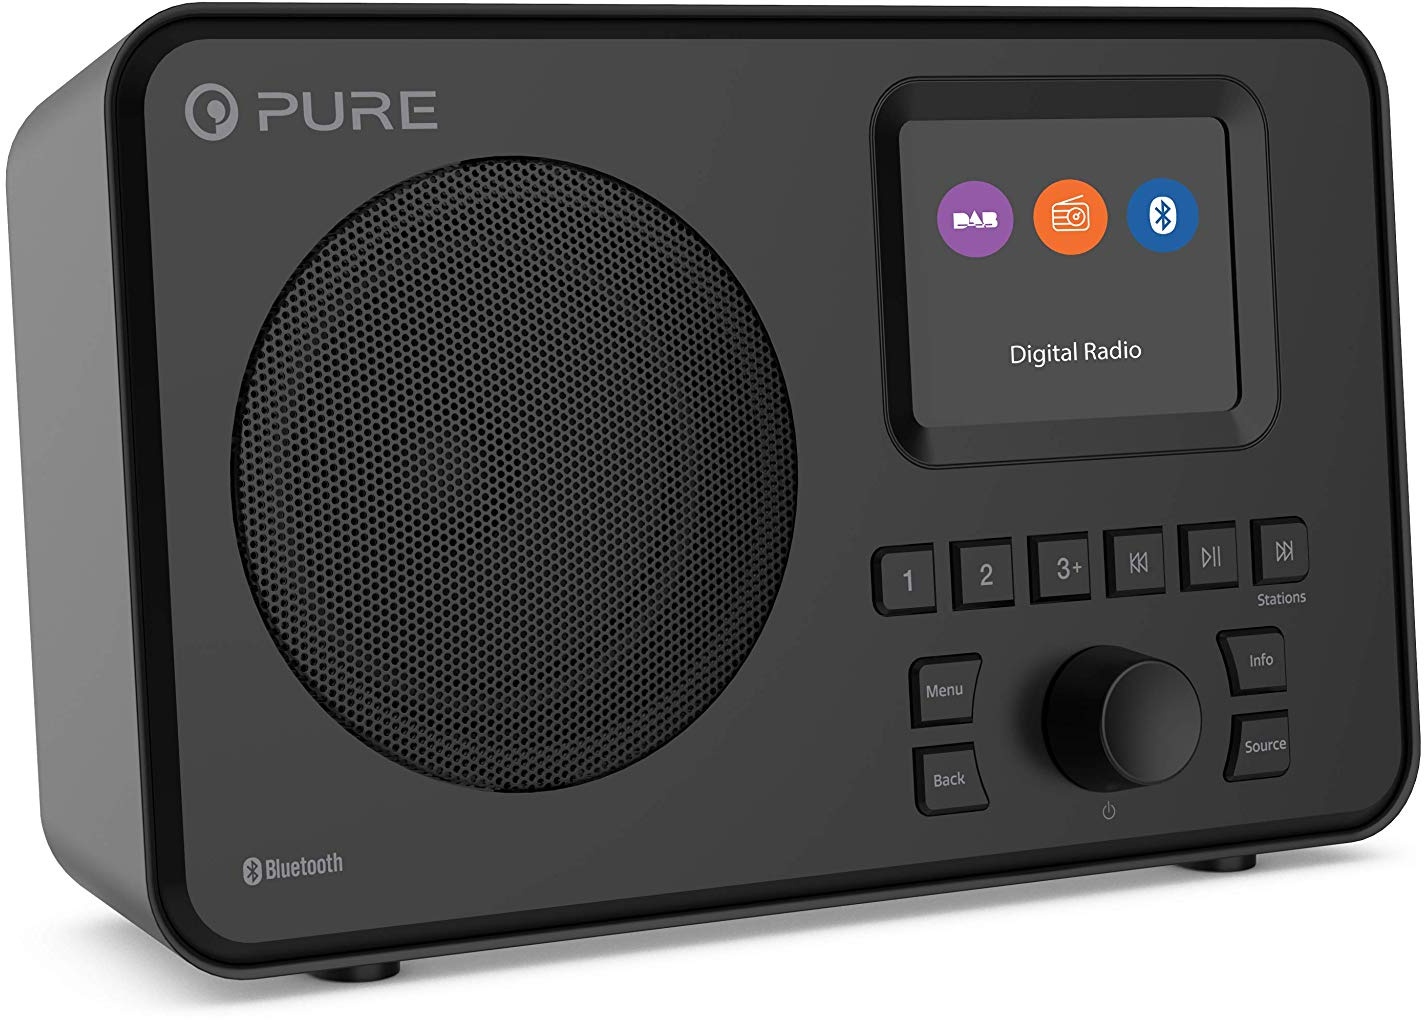 Pure Elan One tragbares DAB+ Radio mit Bluetooth 5.0 (DAB/DAB+ und UKW Radio, 2,4" TFT Display, 20 Senderspeicher, 3-Preset-Tasten, 3.5 mm AUX Anschluss, Batteriebetrieb möglich, USB), Schwarz